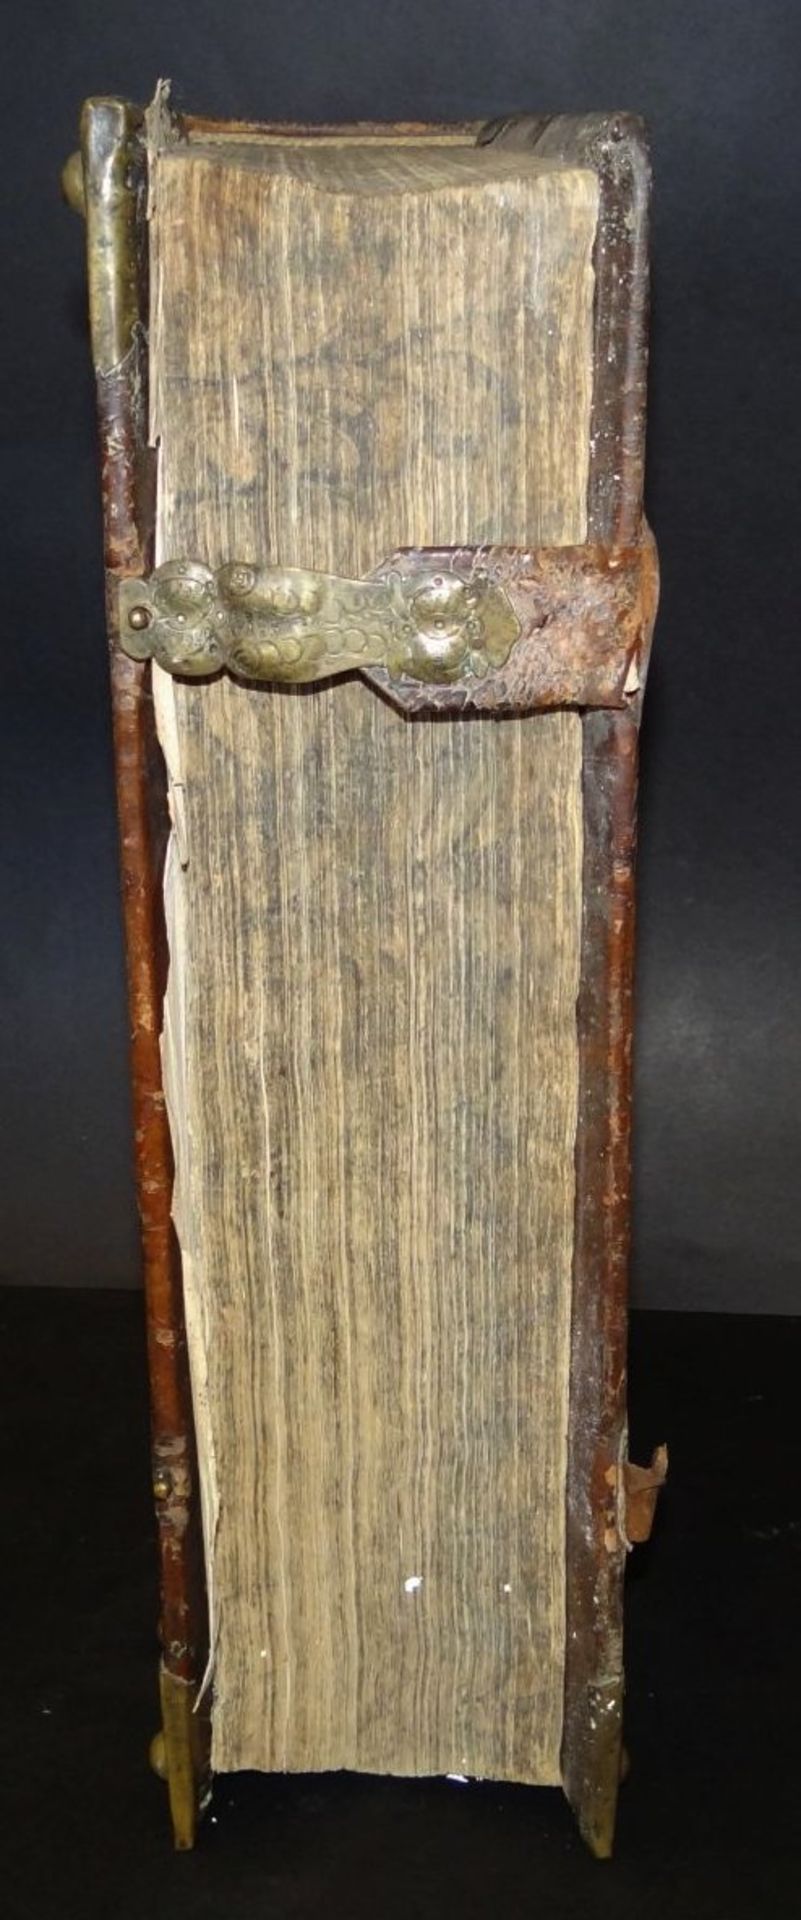 Martin Luther "Biblia-oder die ganze hl. Schrift" Tübingen 1729, Gebrauchsspuren, Einband der Zeit - Bild 3 aus 10